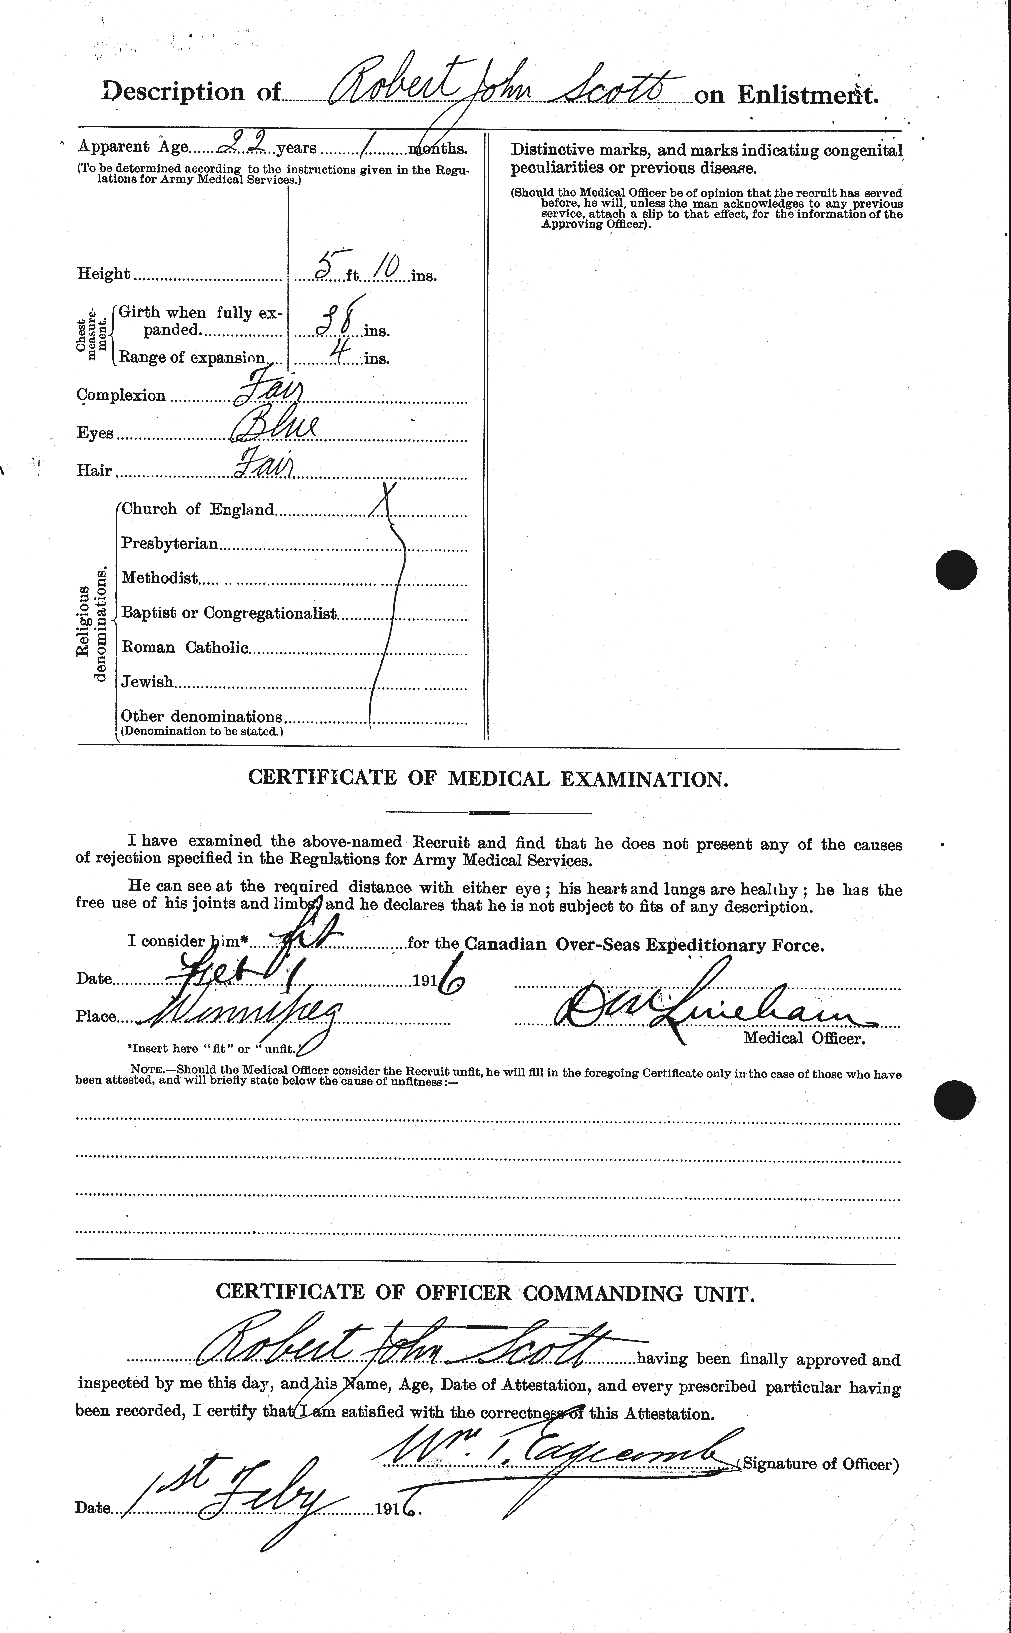 Dossiers du Personnel de la Première Guerre mondiale - CEC 089129b